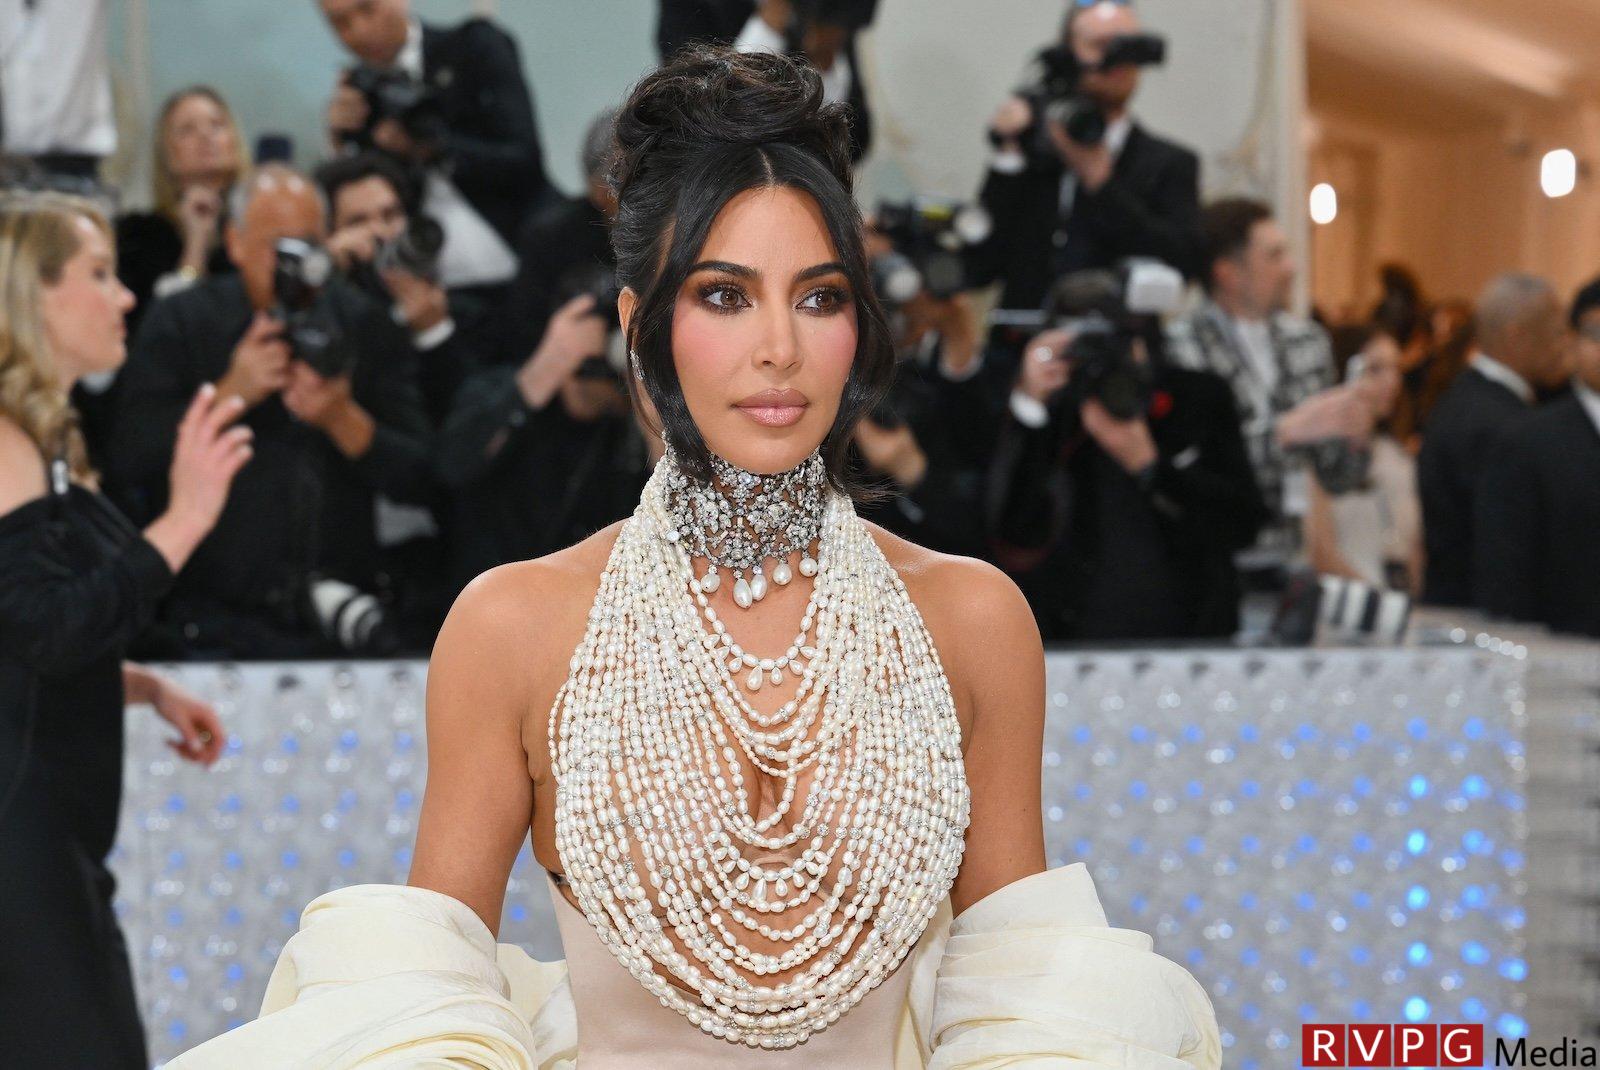 Will Kim Kardashian Skip Met Gala After Embarrassing Tom Brady Roast Moment?